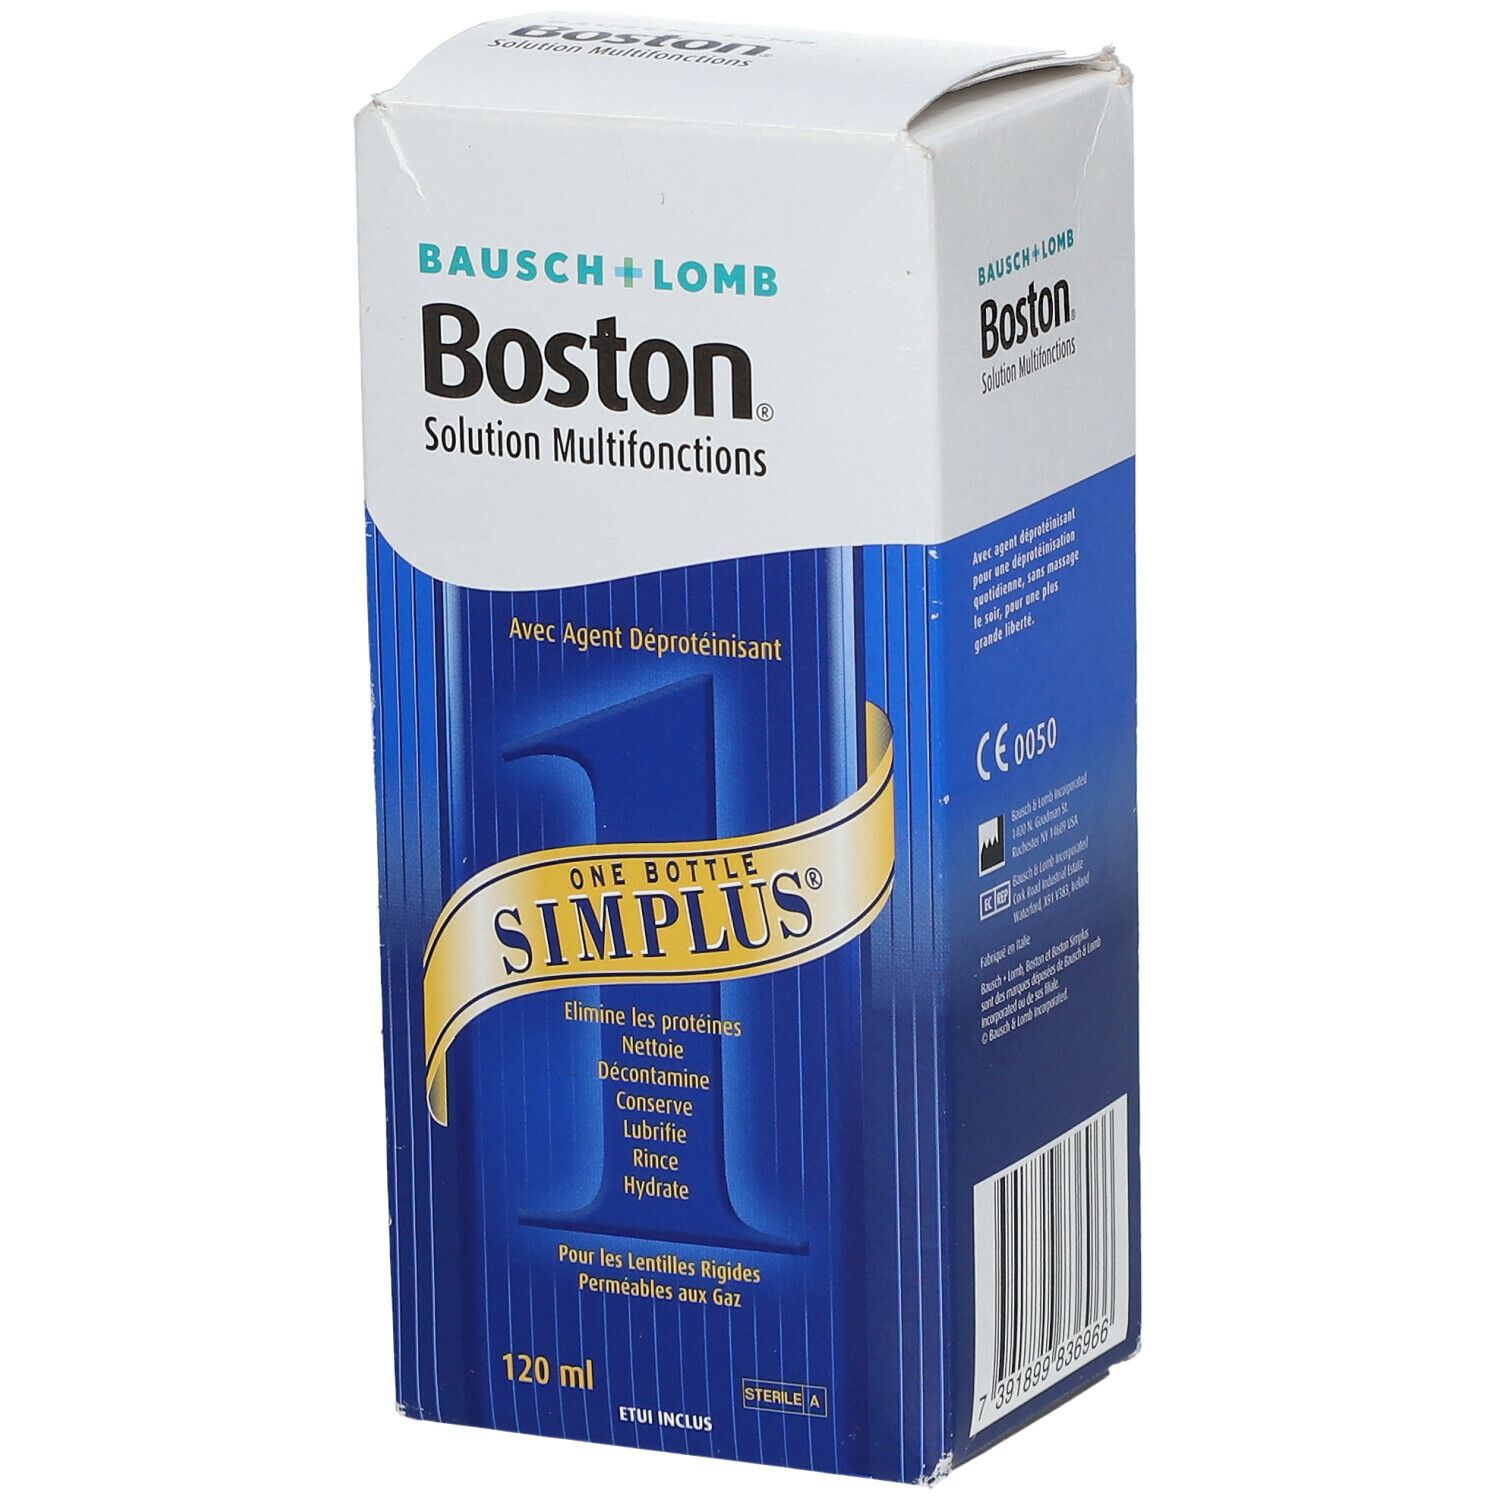 Boston Simplus care system lentilles rigides